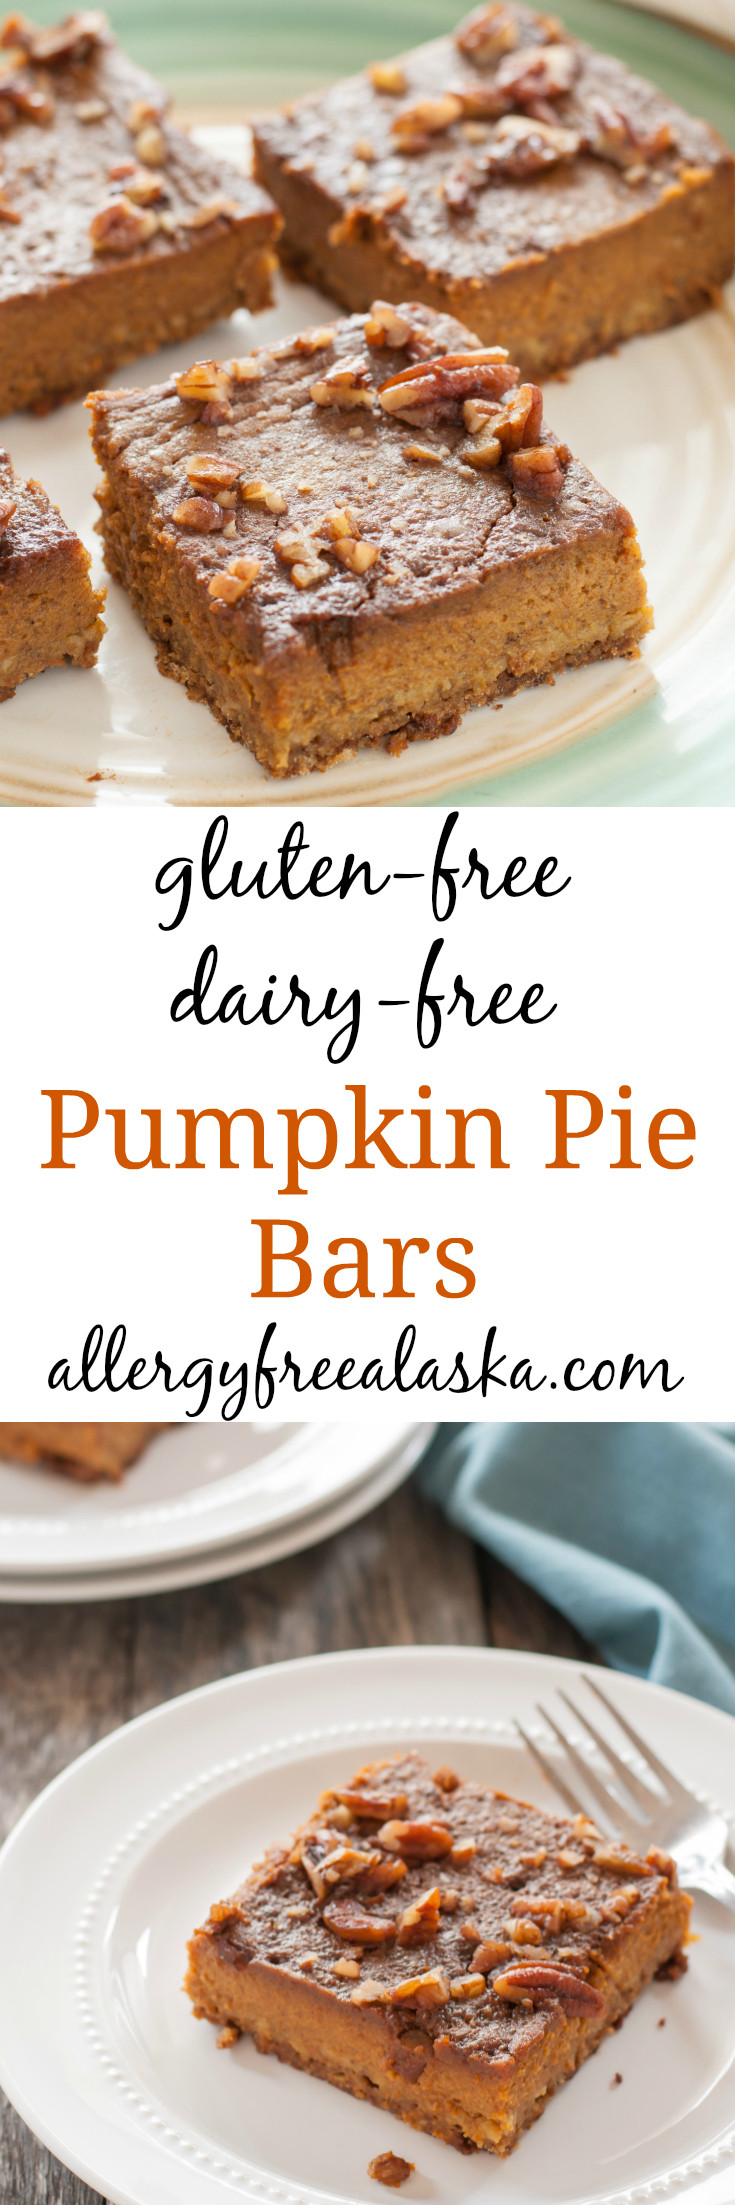 Gluten Free Dairy Free Pumpkin Pie
 gluten free dairy free pumpkin pie bar recipe from allergy